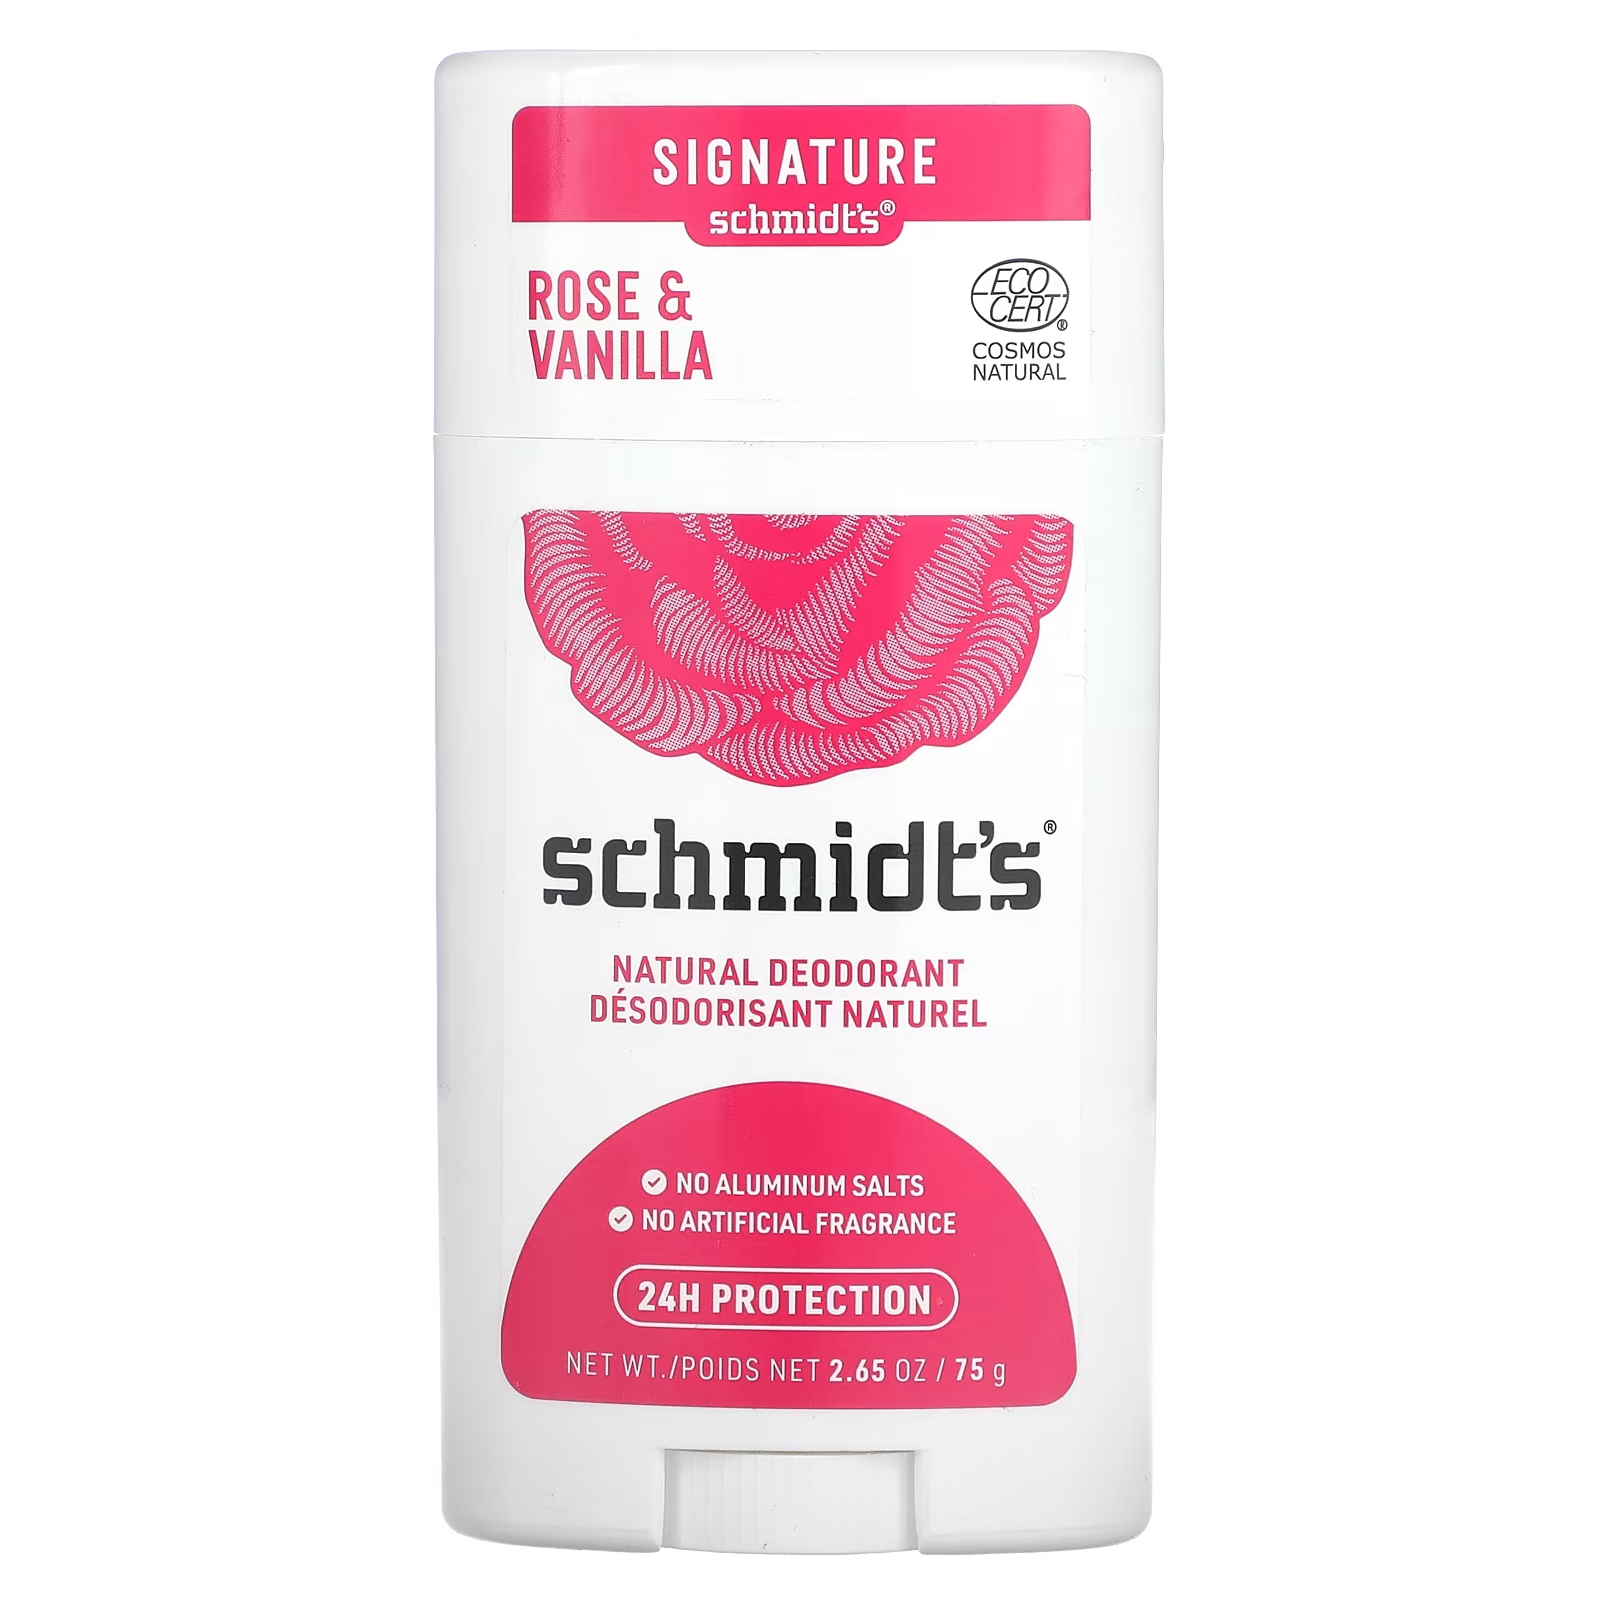 Натуральный дезодорант Schmidt's «Роза и ваниль», 2,65 унции (75 г) schmidt s натуральный дезодорант кокос и каолиновая глина 75 г 2 65 унции